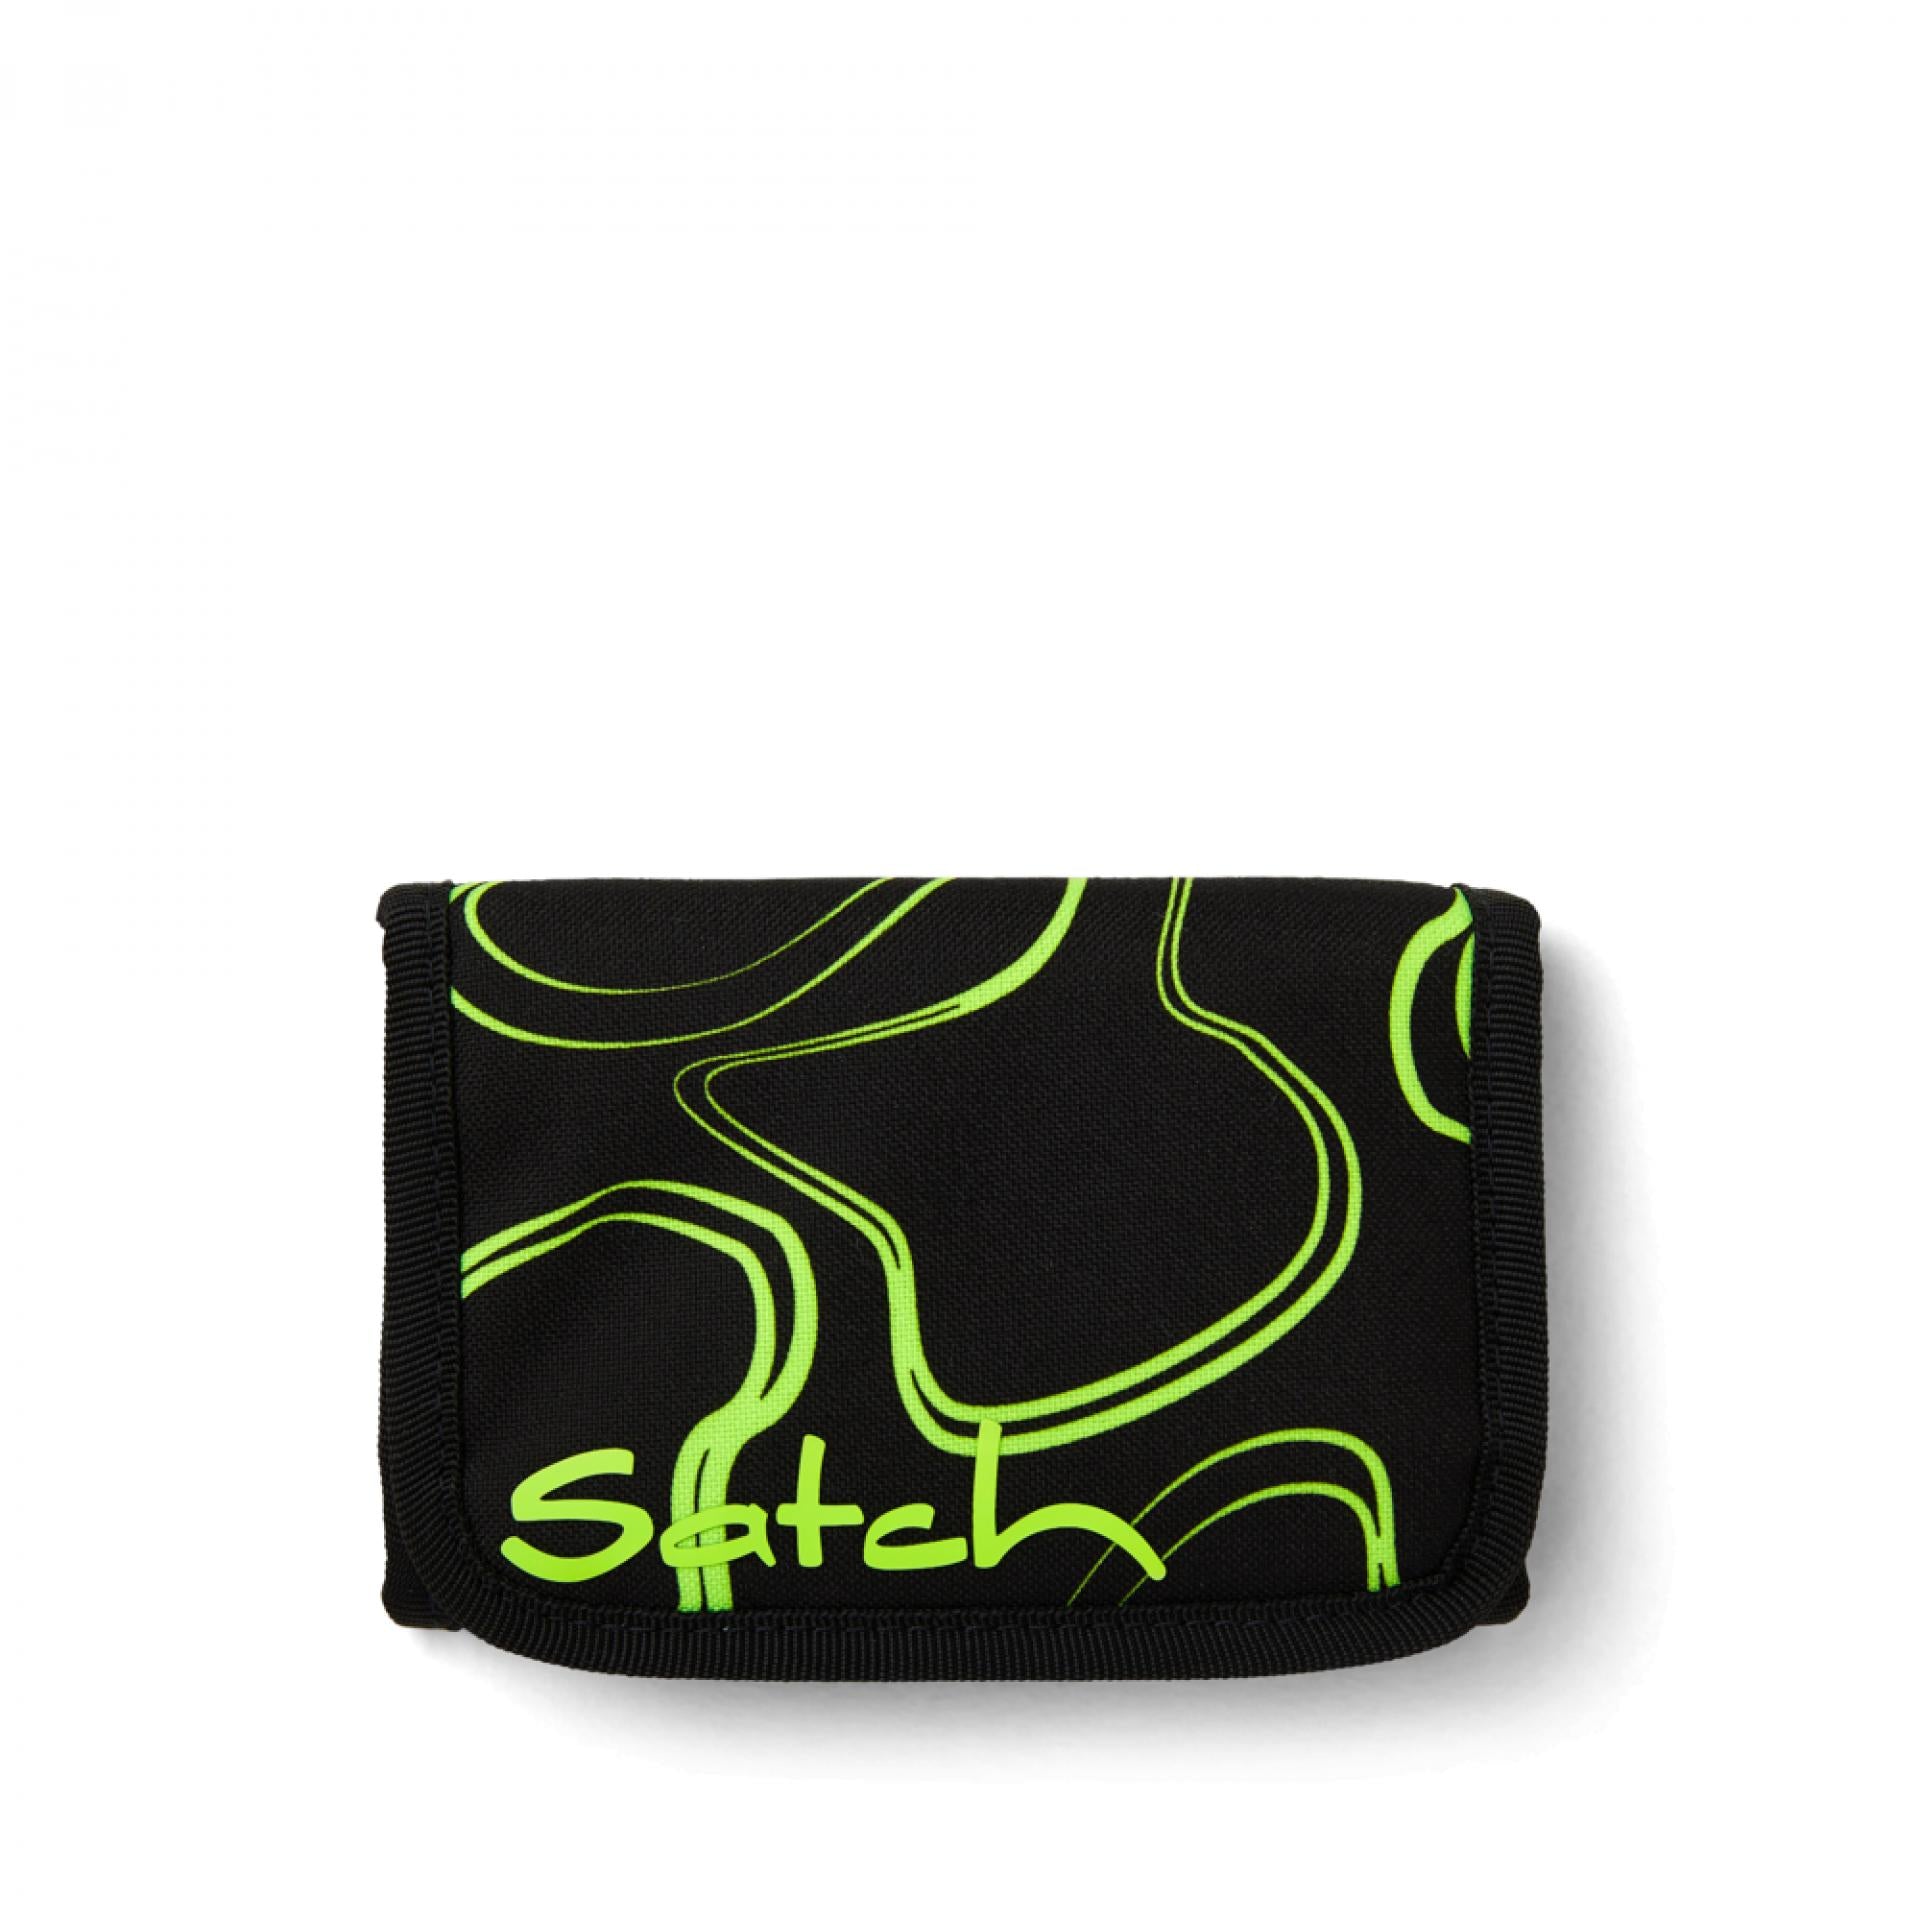 Satch Teenager Geldbörse - Farbe: Grün Supreme